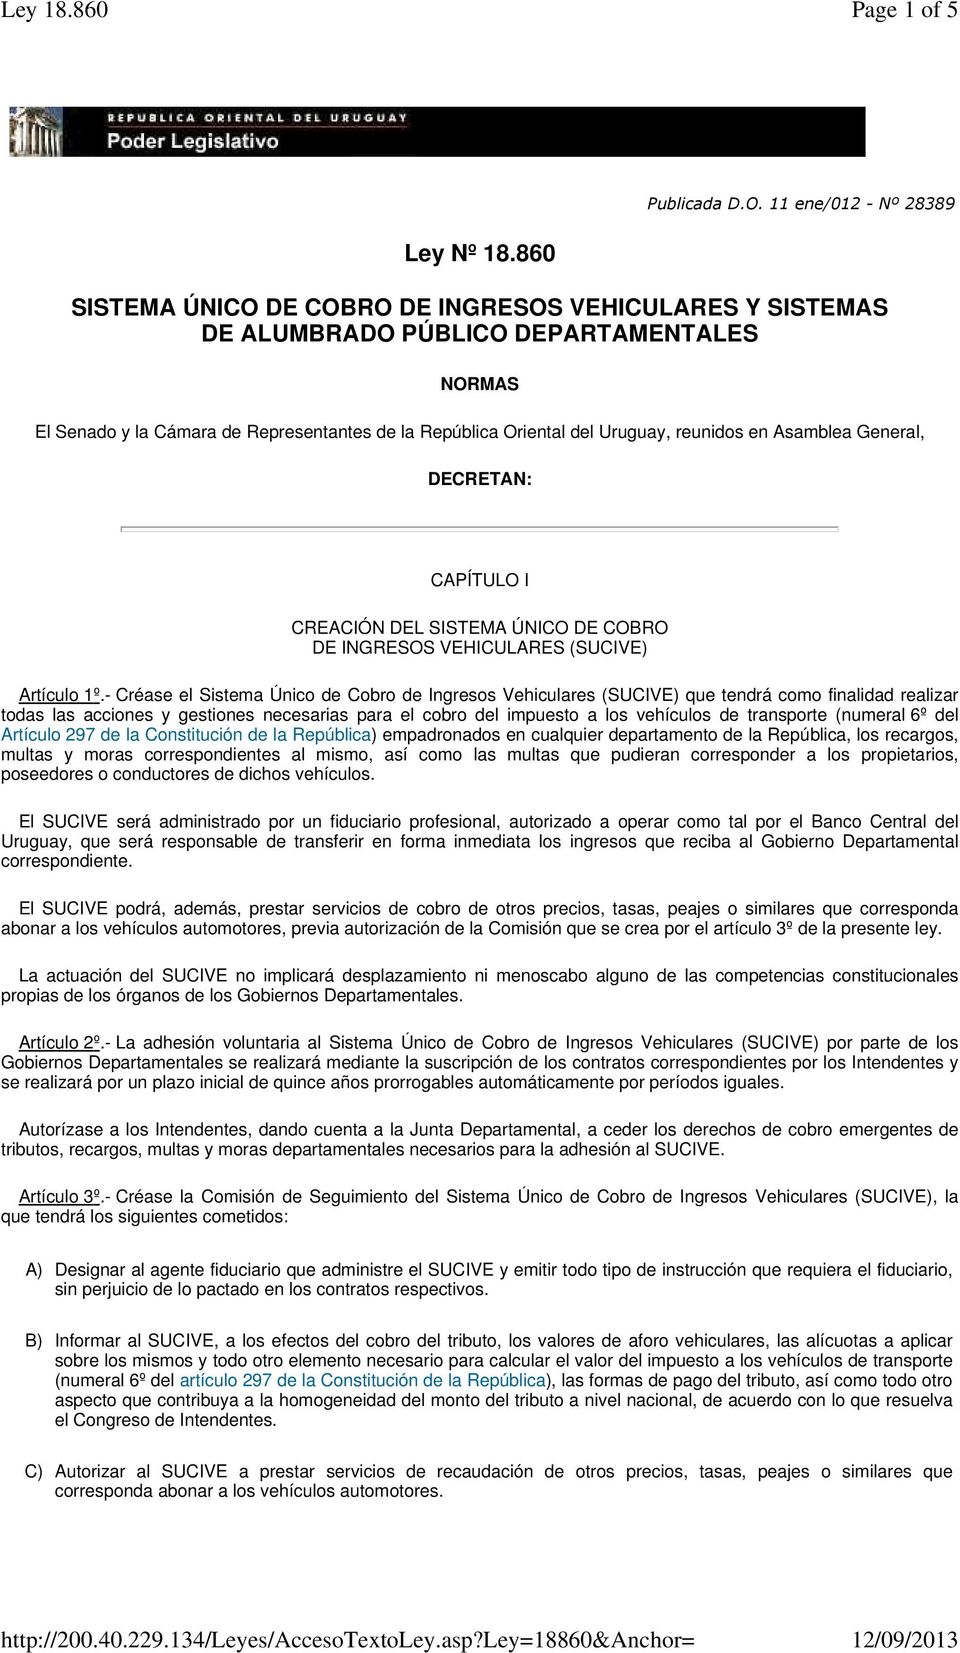 Asamblea General, DECRETAN: CAPÍTULO I CREACIÓN DEL SISTEMA ÚNICO DE COBRO DE INGRESOS VEHICULARES (SUCIVE) Artículo 1º.